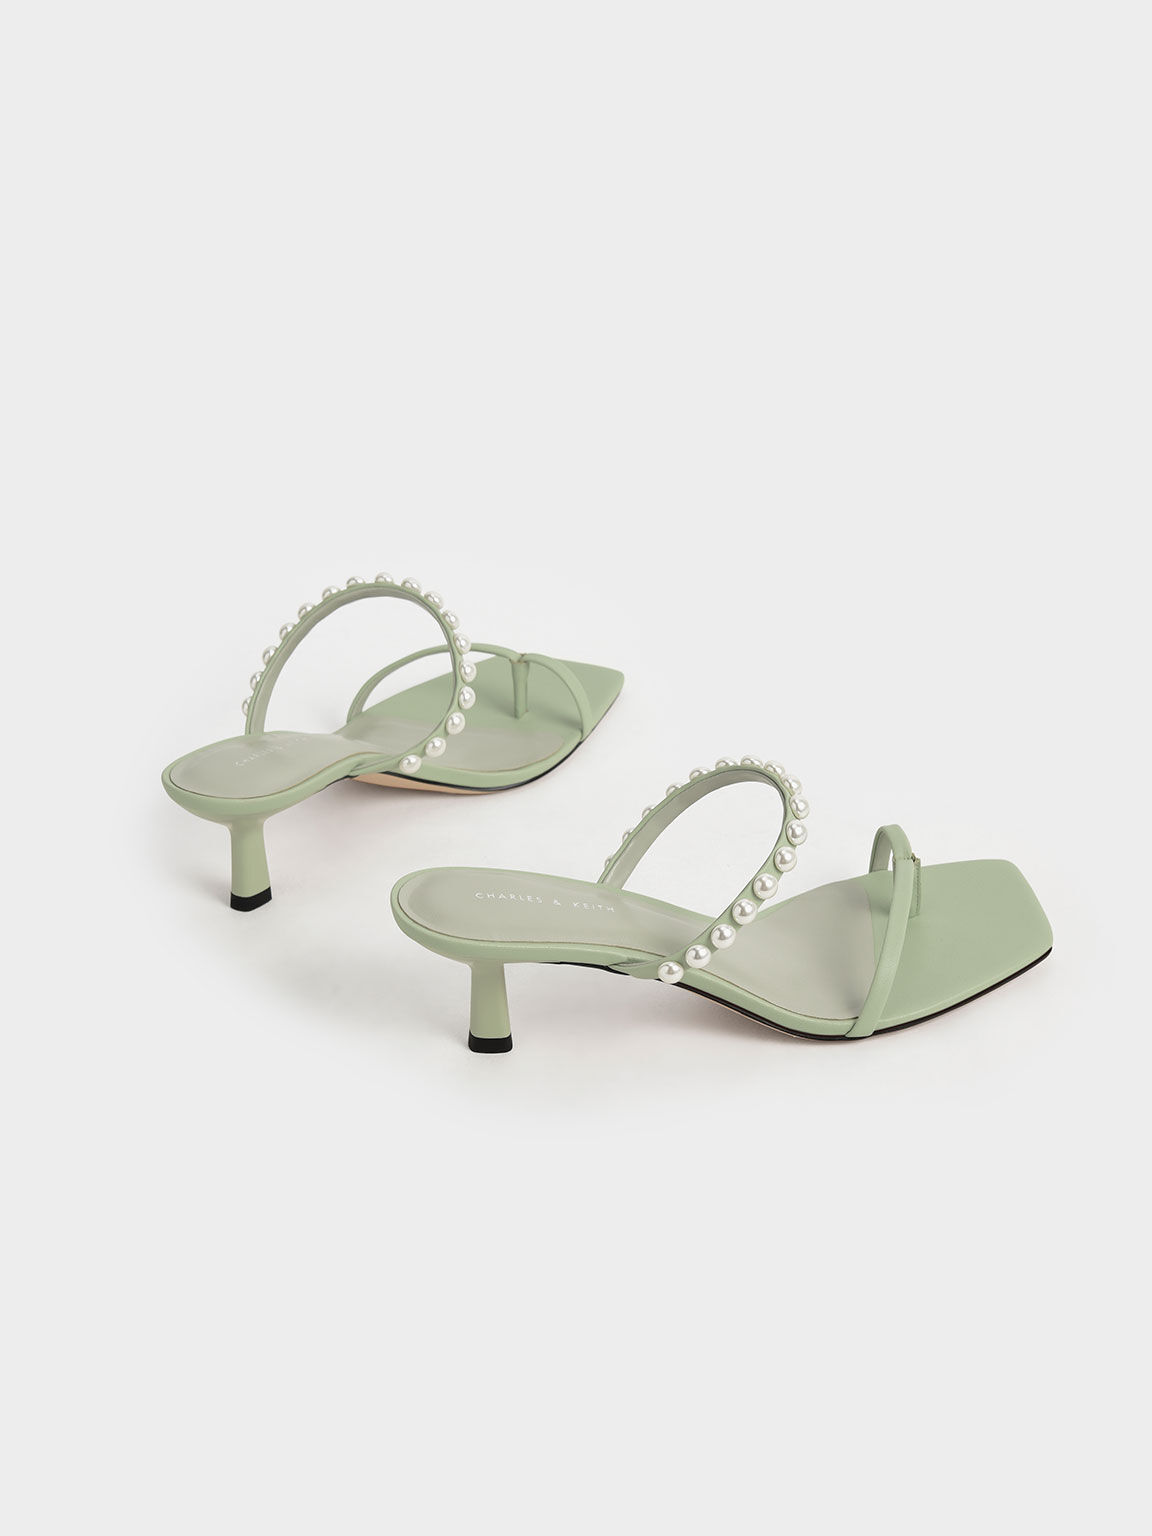 Sandal Thong Heeled Pearl-Embellished, Sage Green, hi-res